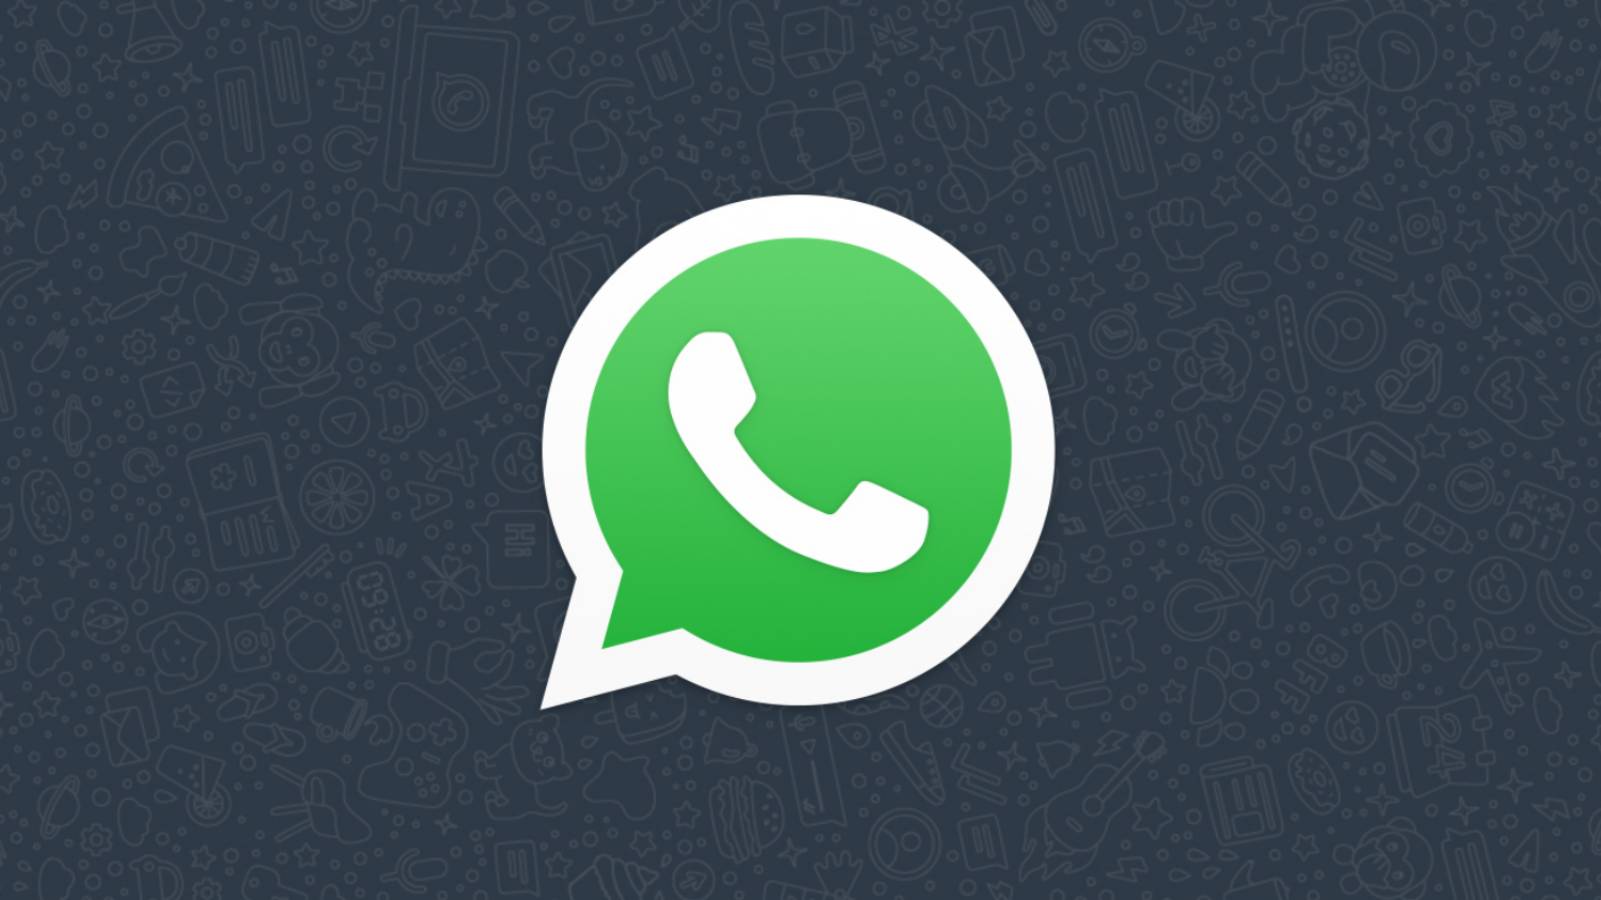 OFFIZIELLE WhatsApp-Benachrichtigung jetzt an MILLIARDEN von Menschen gesendet